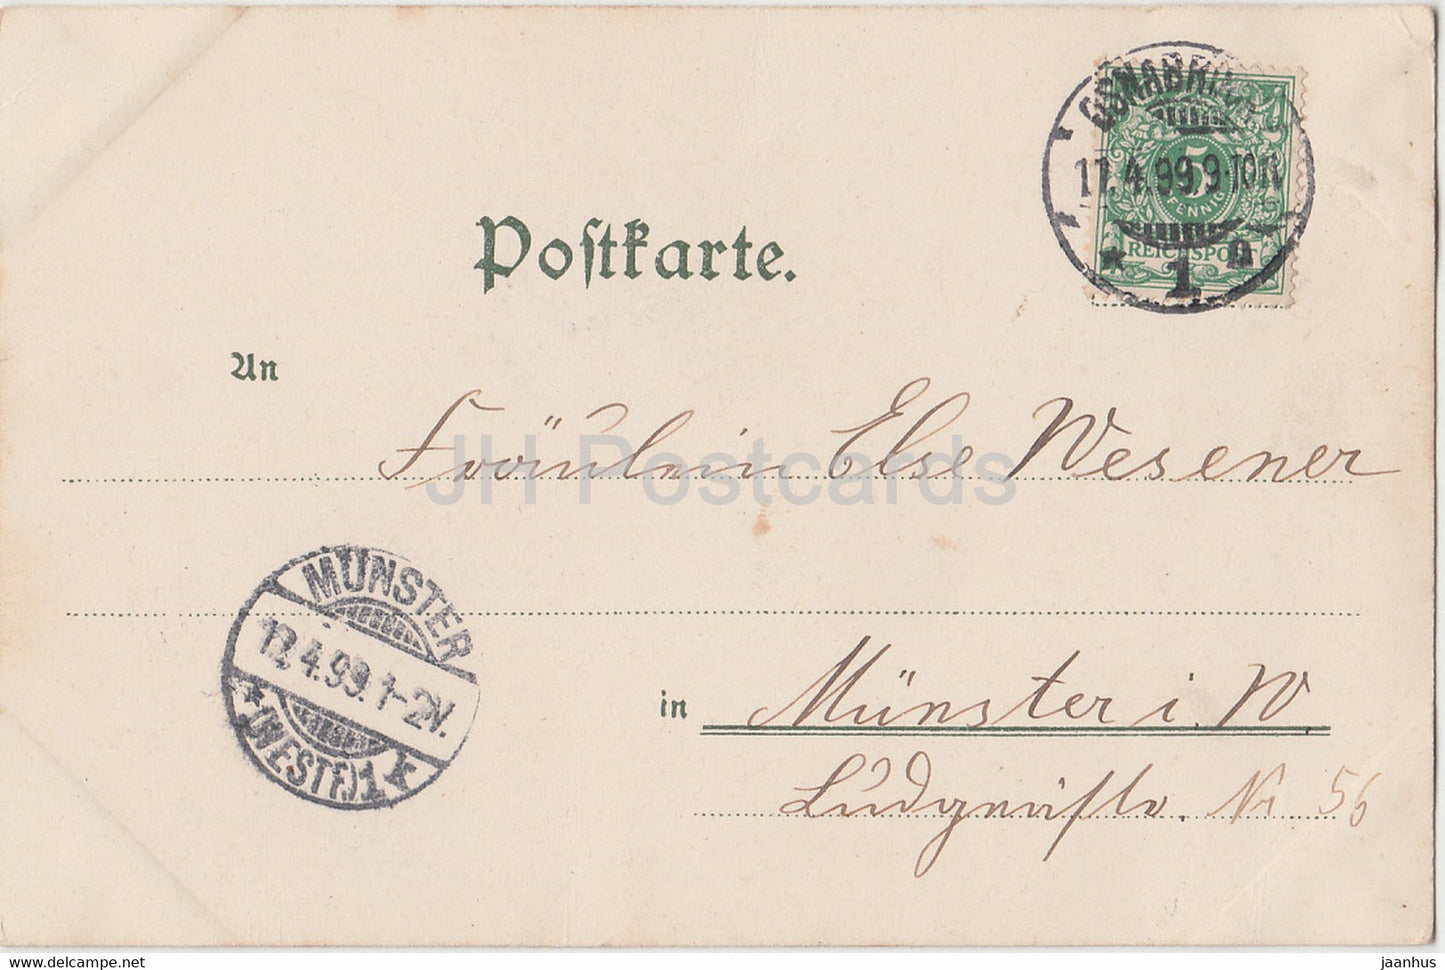 Mädchen - Katze - Illustration - Serie IV - alte Postkarte - 1899 - Deutschland - gebraucht